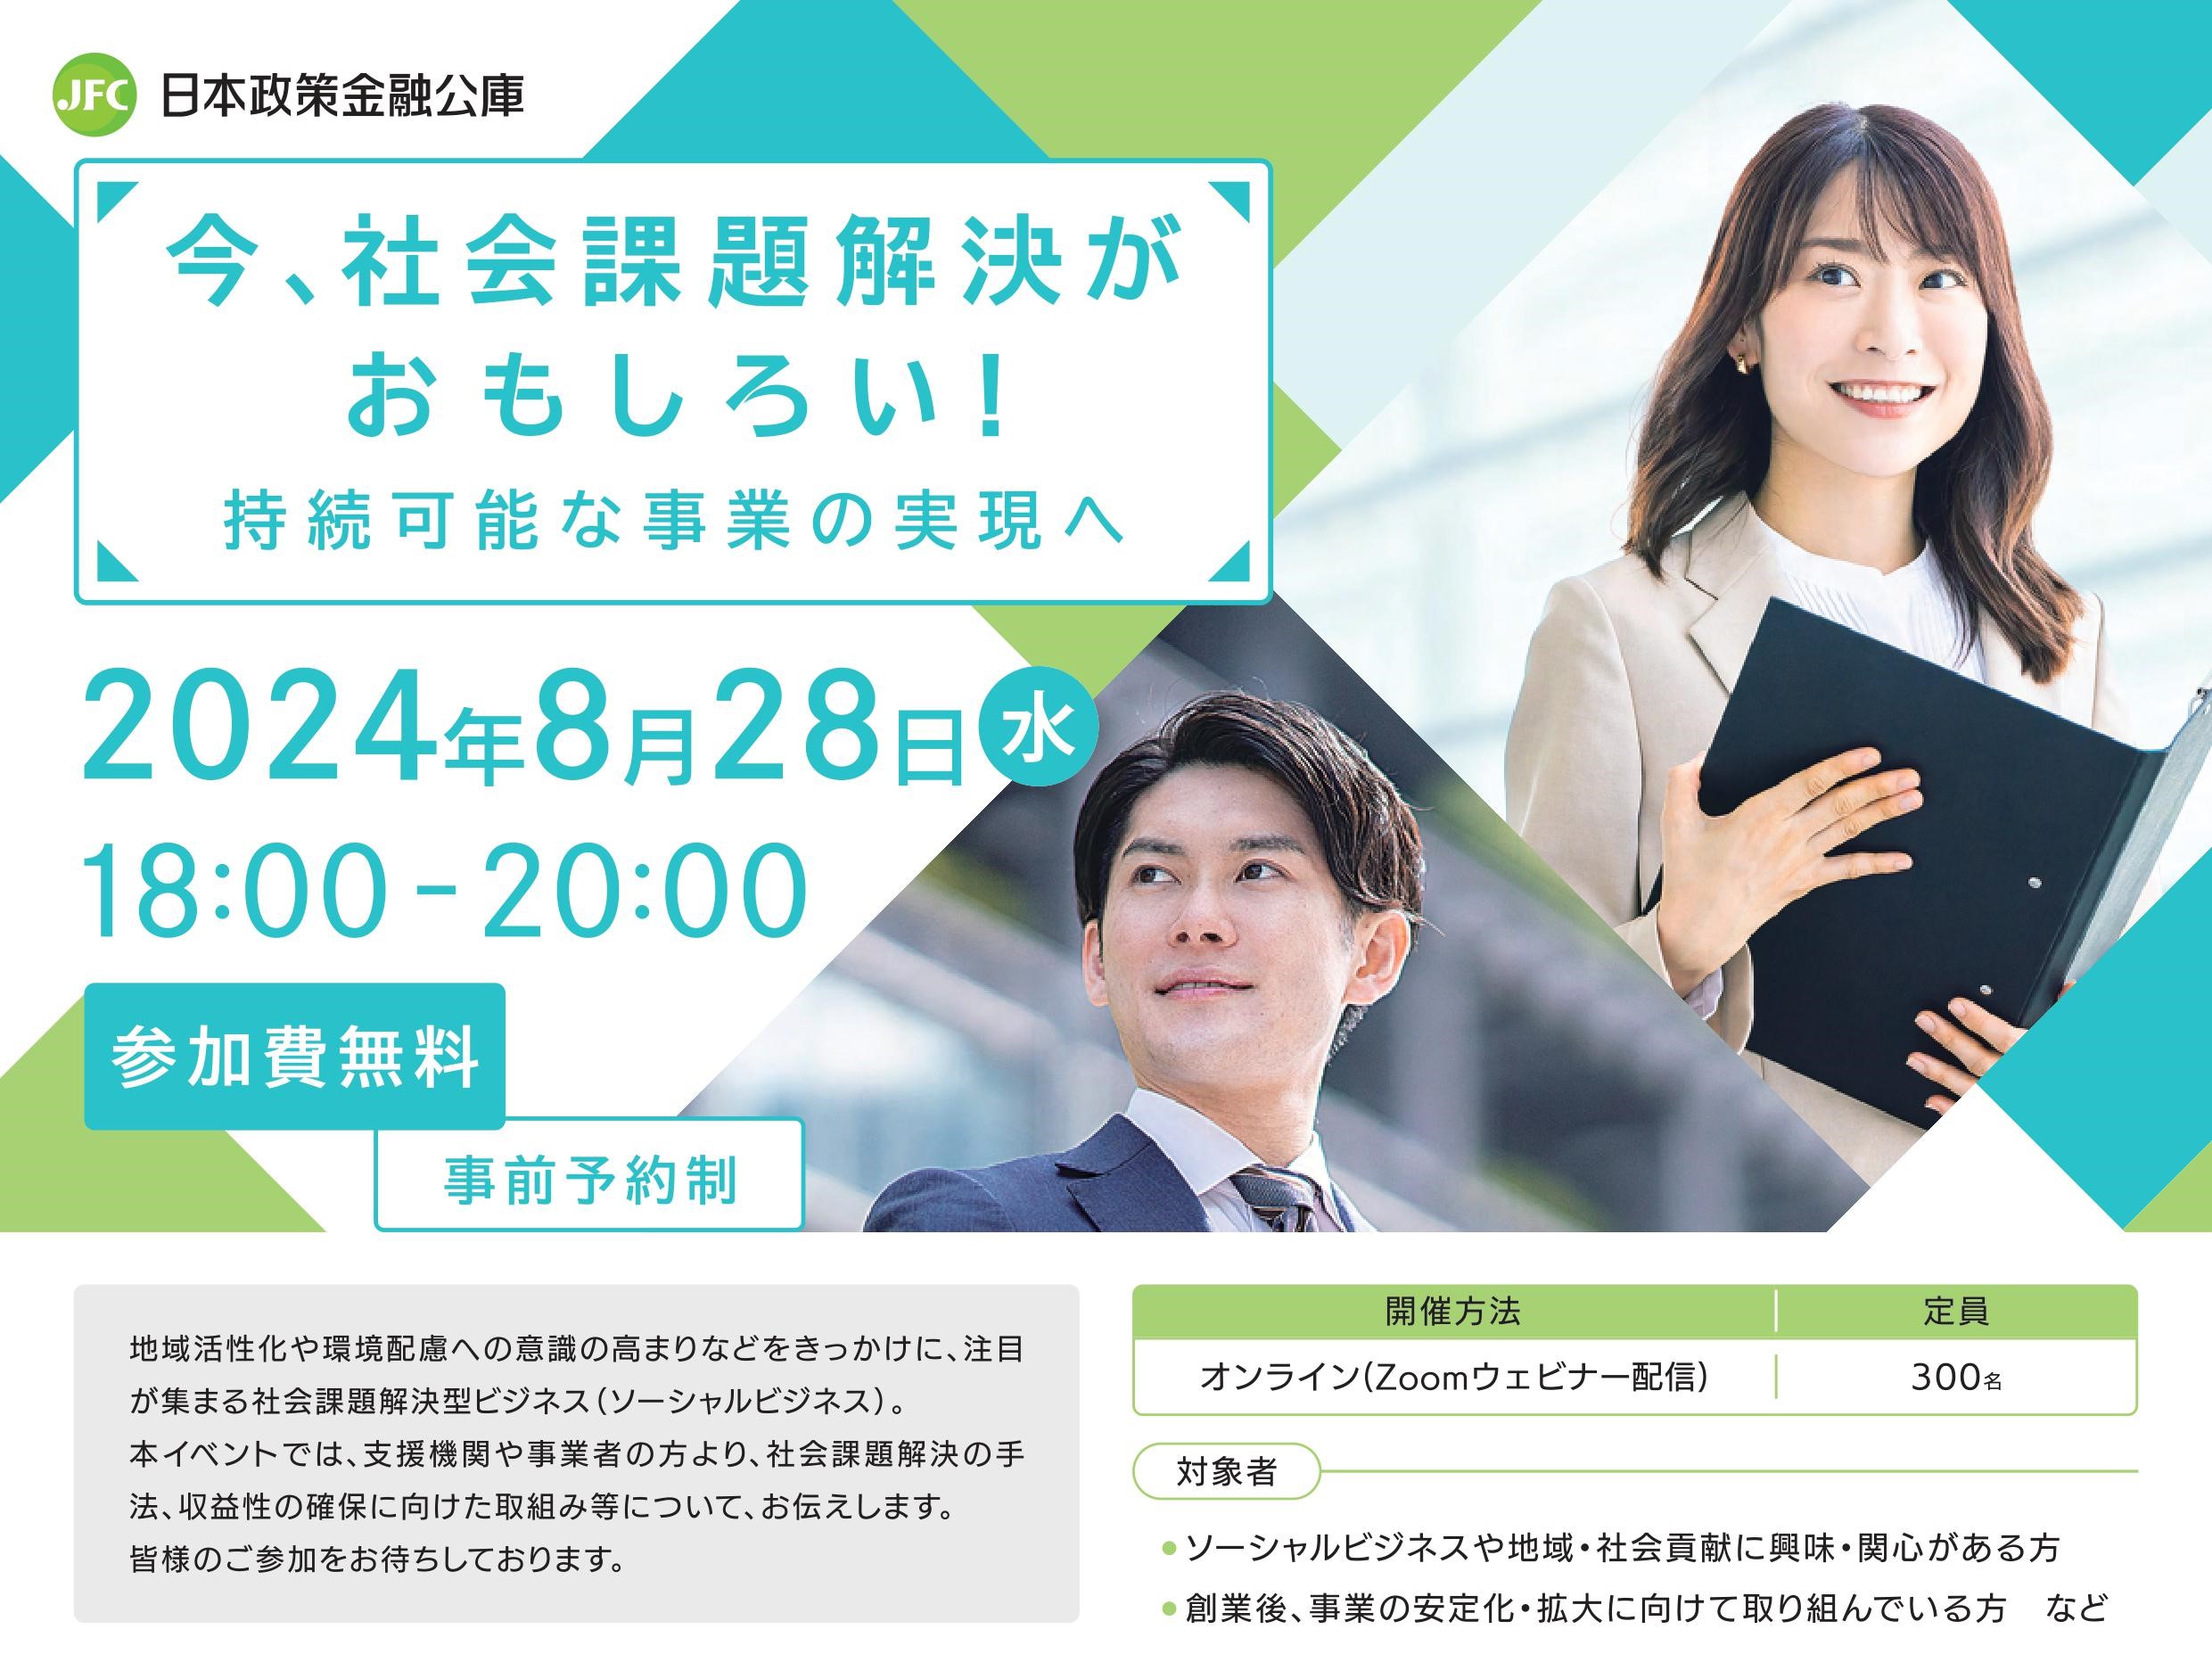 《広報協力》ソーシャルビジネストークイベント「今、社会課題解決がおもしろい！持続可能な事業の実現へ」 日本政策金融公庫によるセミナーのご案内の写真です